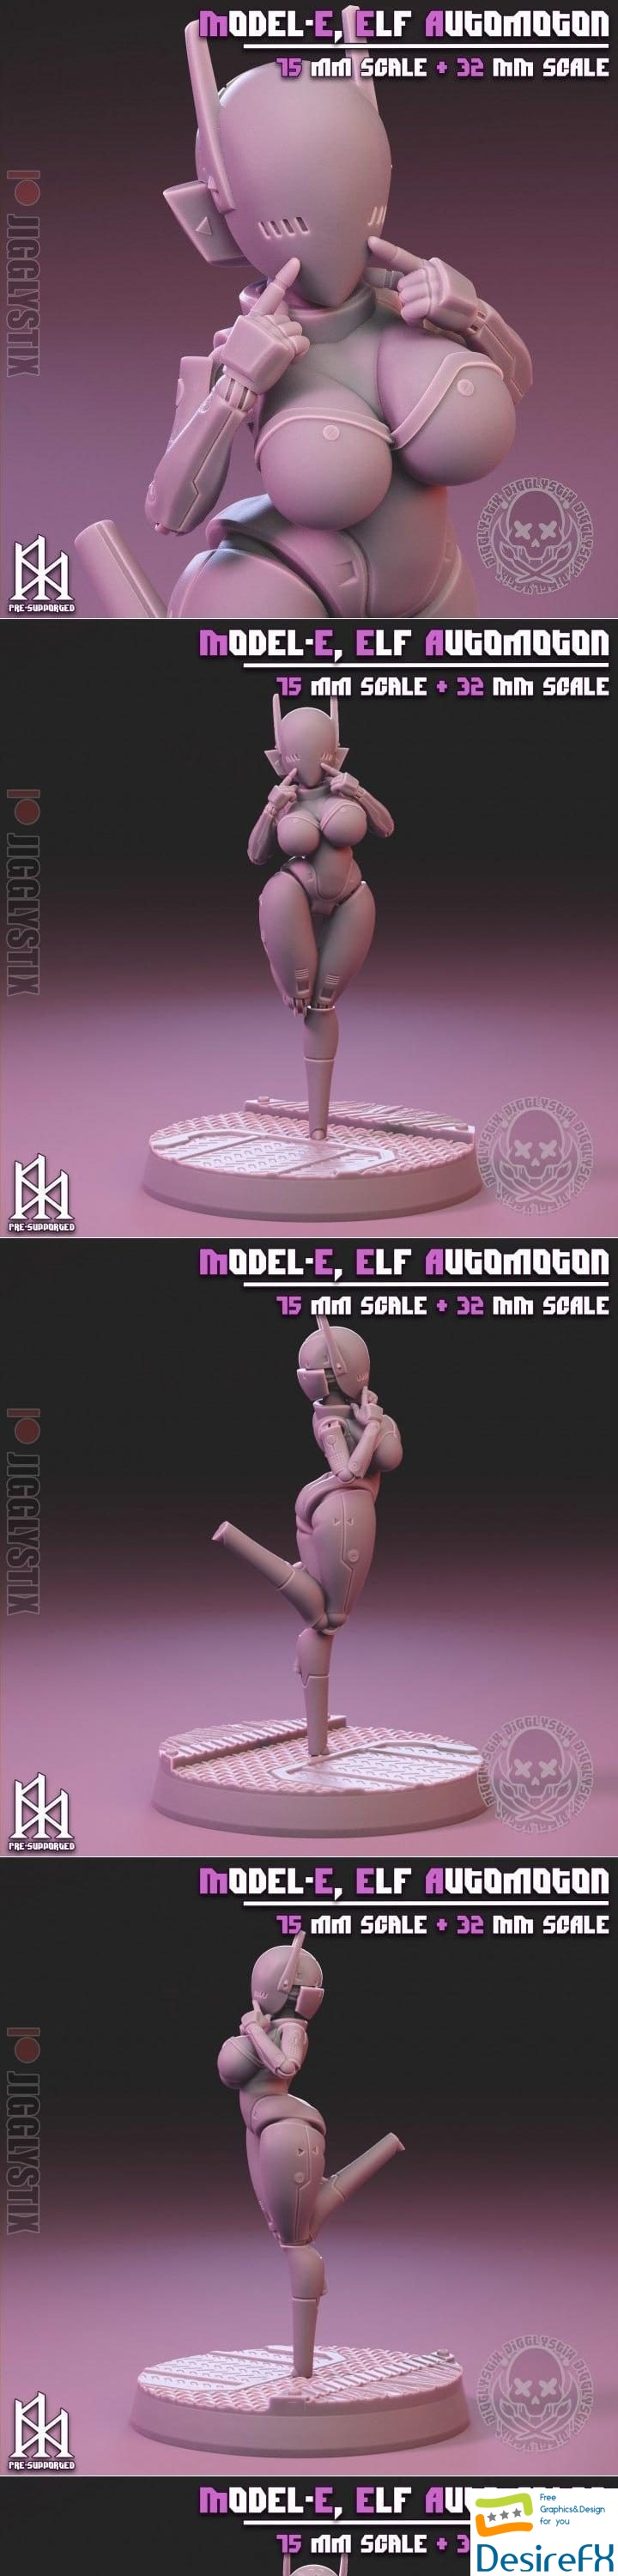 Jigglystix - Elf Automoton 3D Print